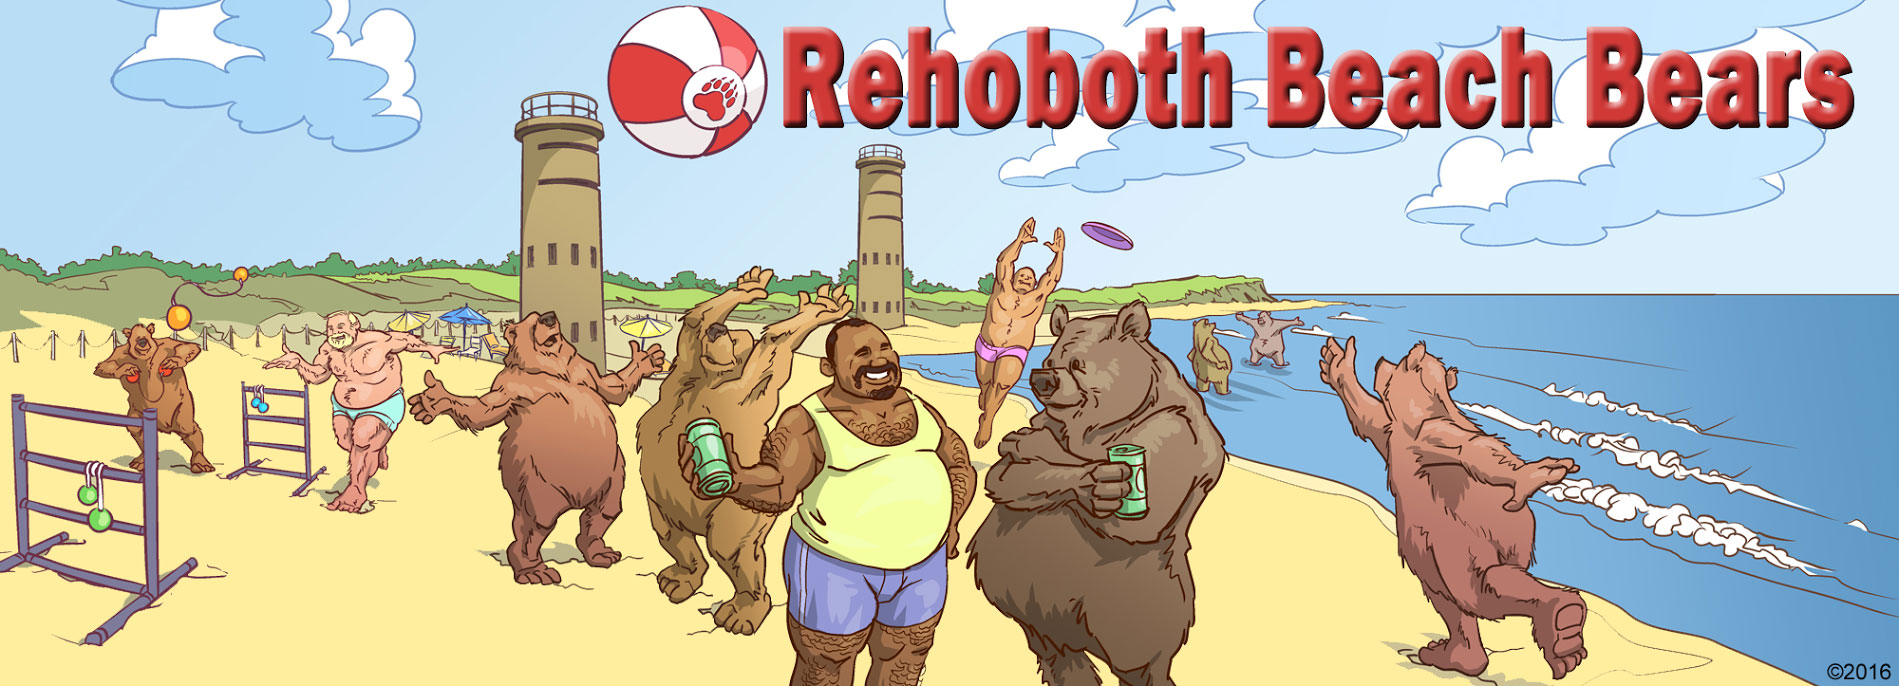 Rehoboth beach shemales